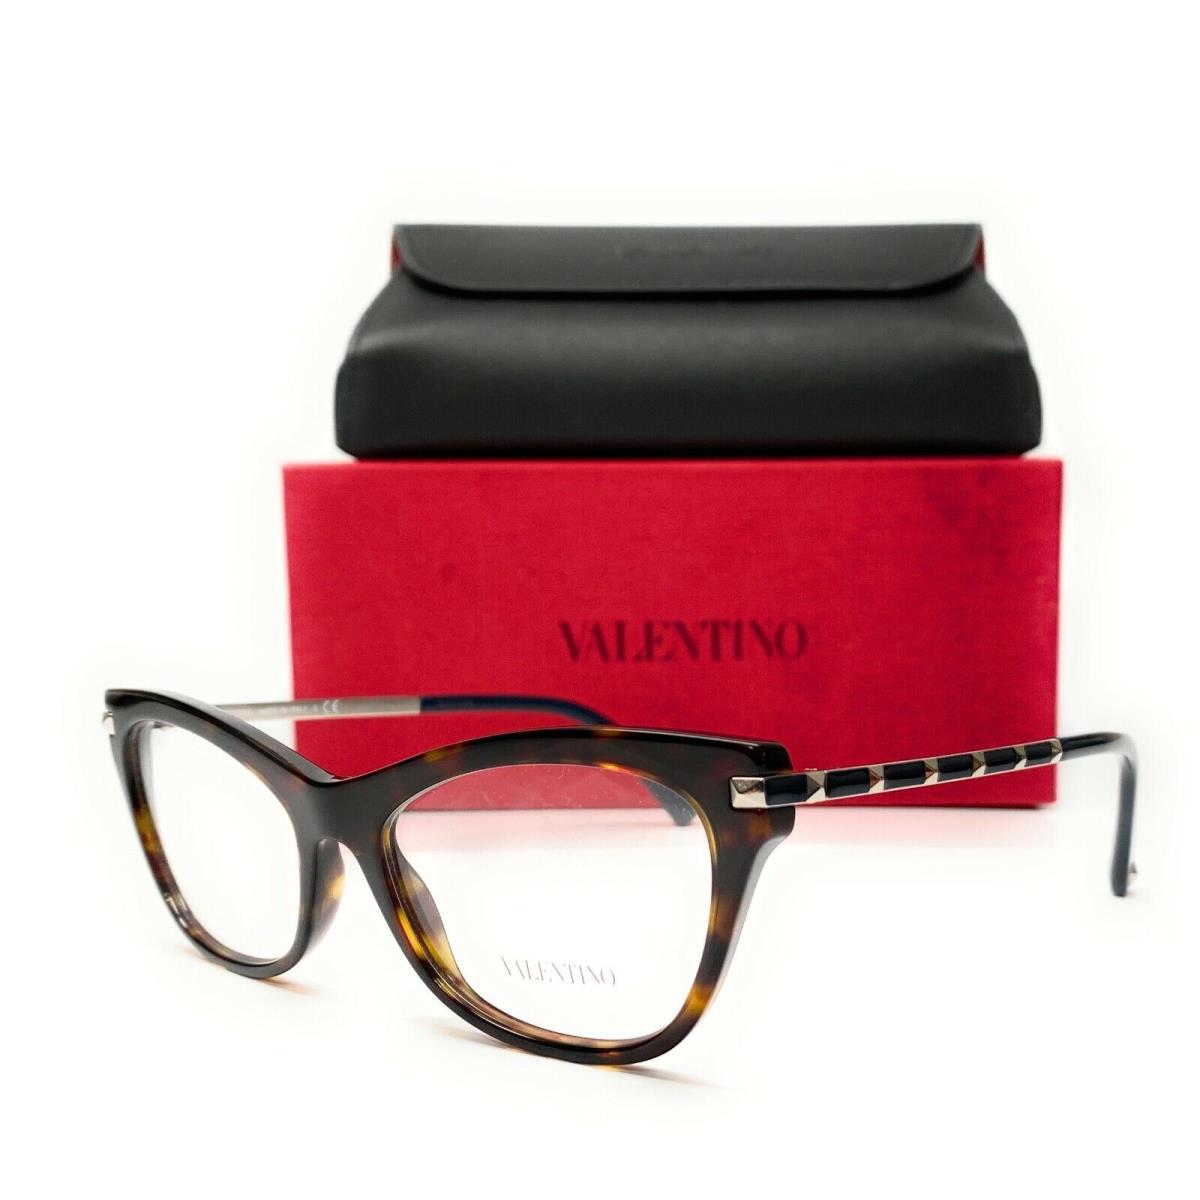 Valentino Brand - Shop Valentino fashion accessories | Fash Brands